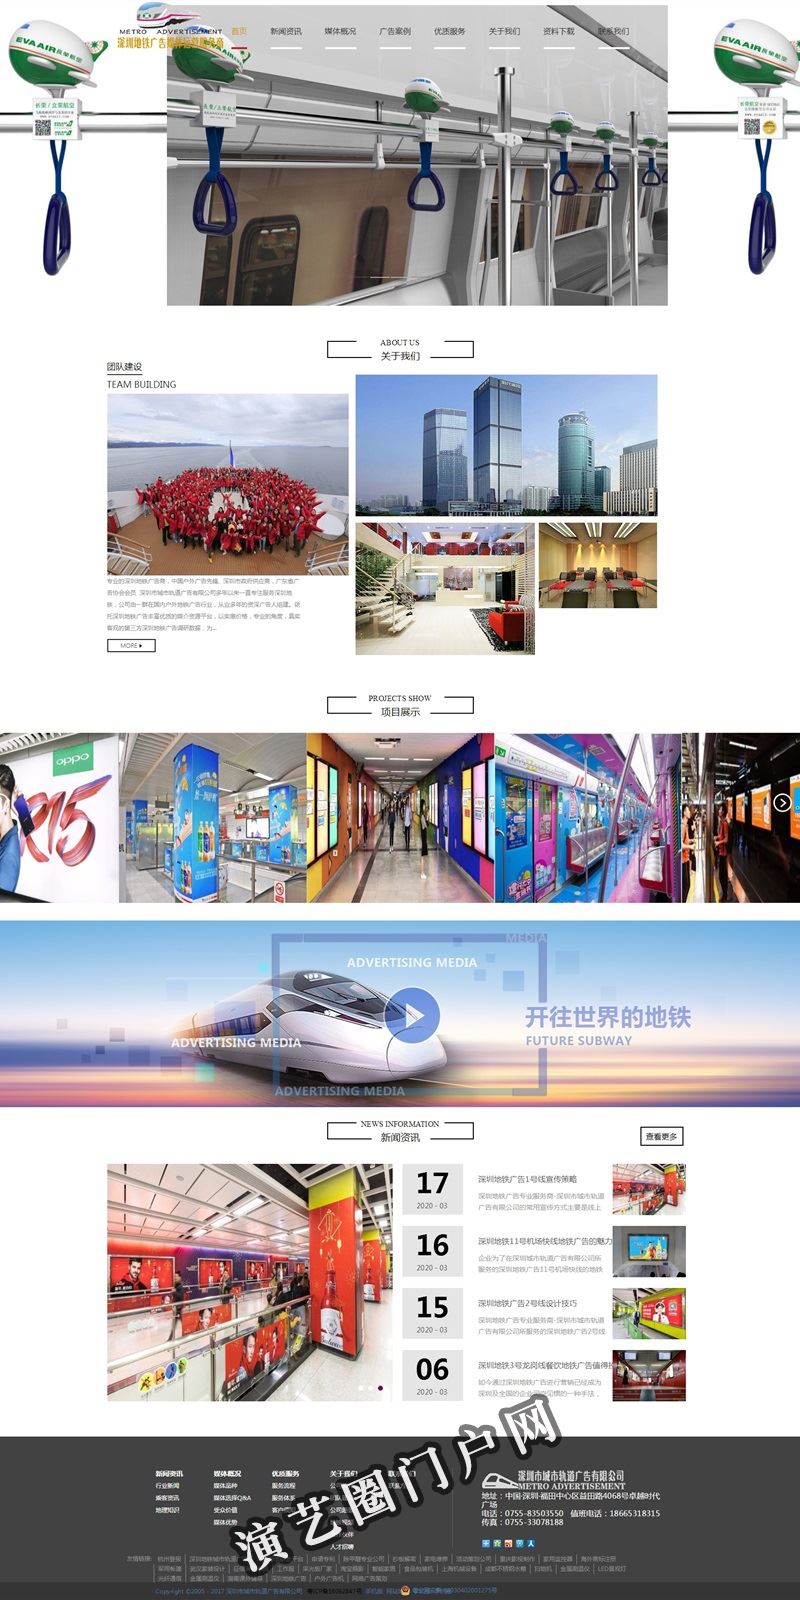 深圳地铁广告价格-深圳地铁广告传媒公司-城市轨道广告有限公司截图